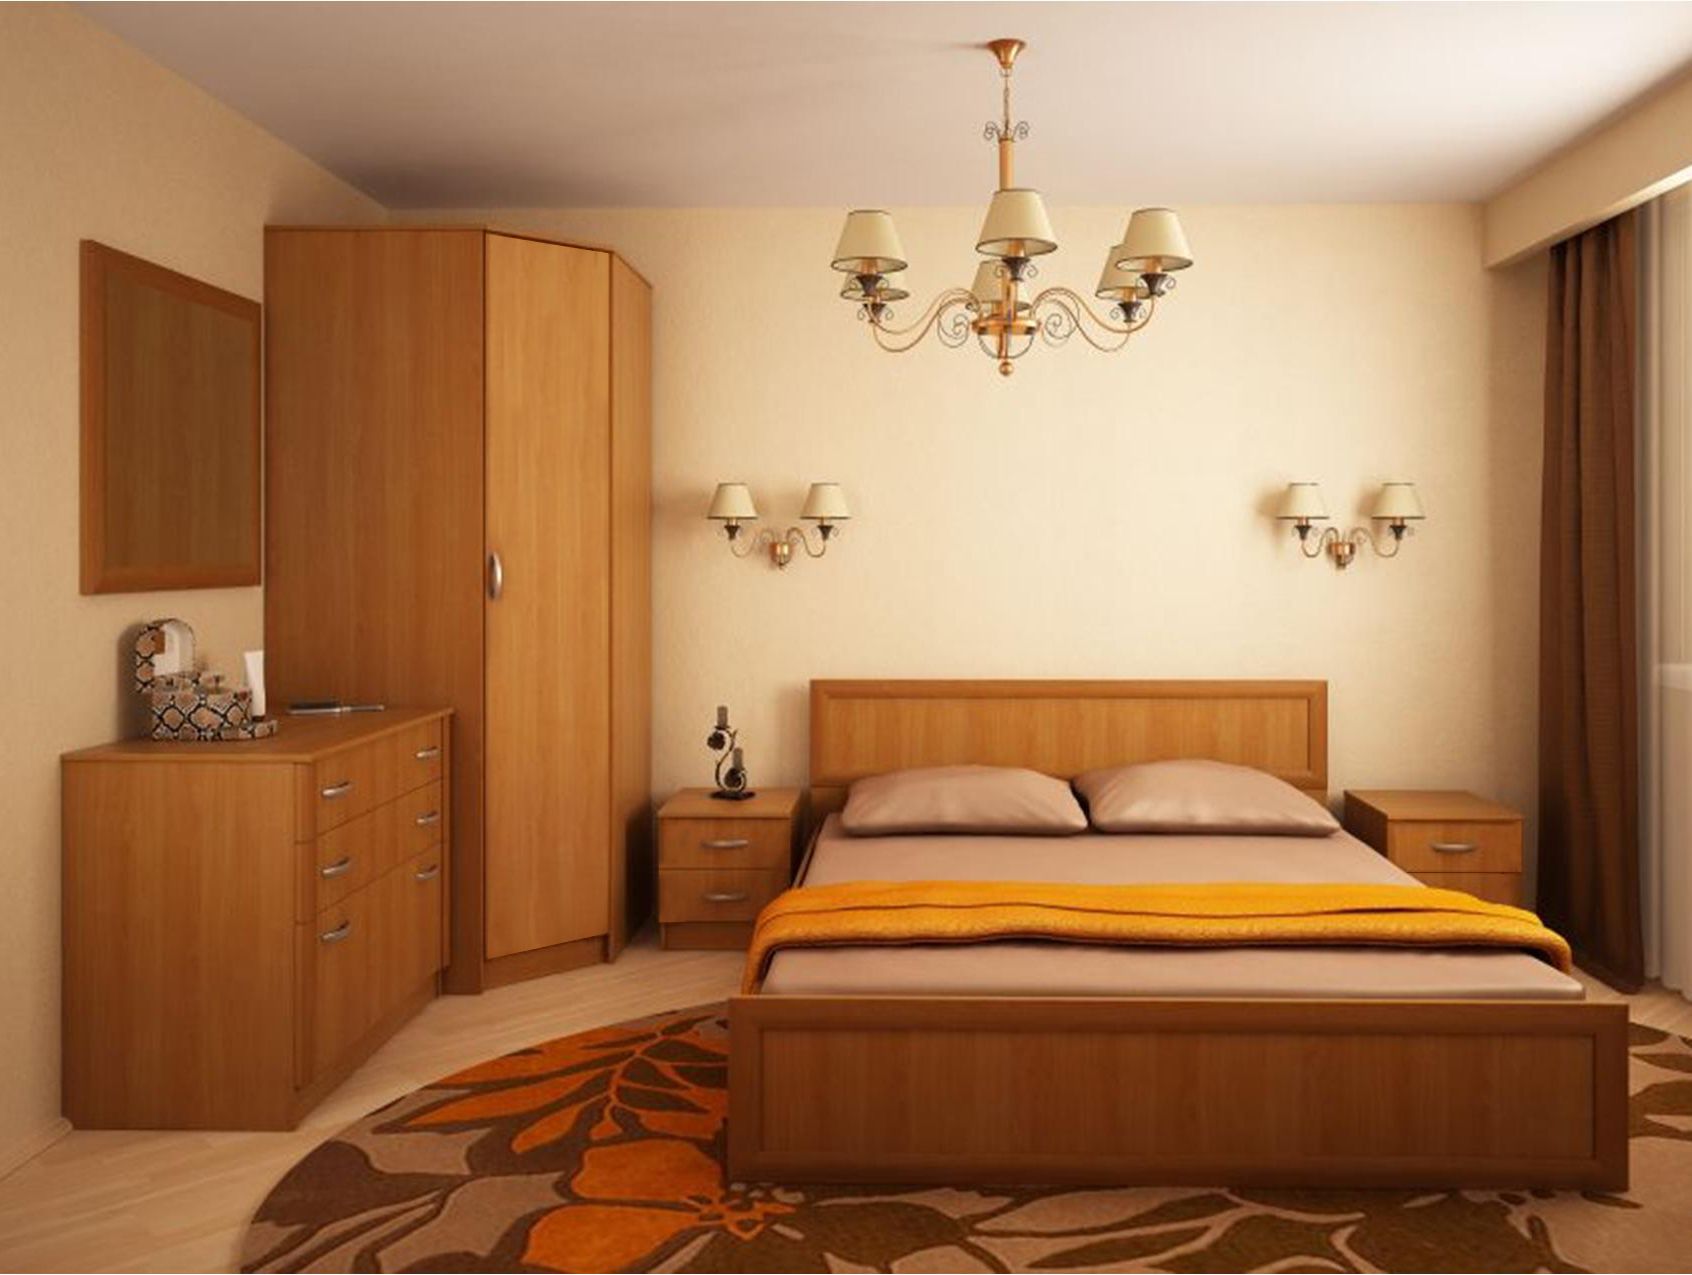 Функциональный и стильный дизайн спальни 12 кв м: интересные идеи, приемы и рекомендации